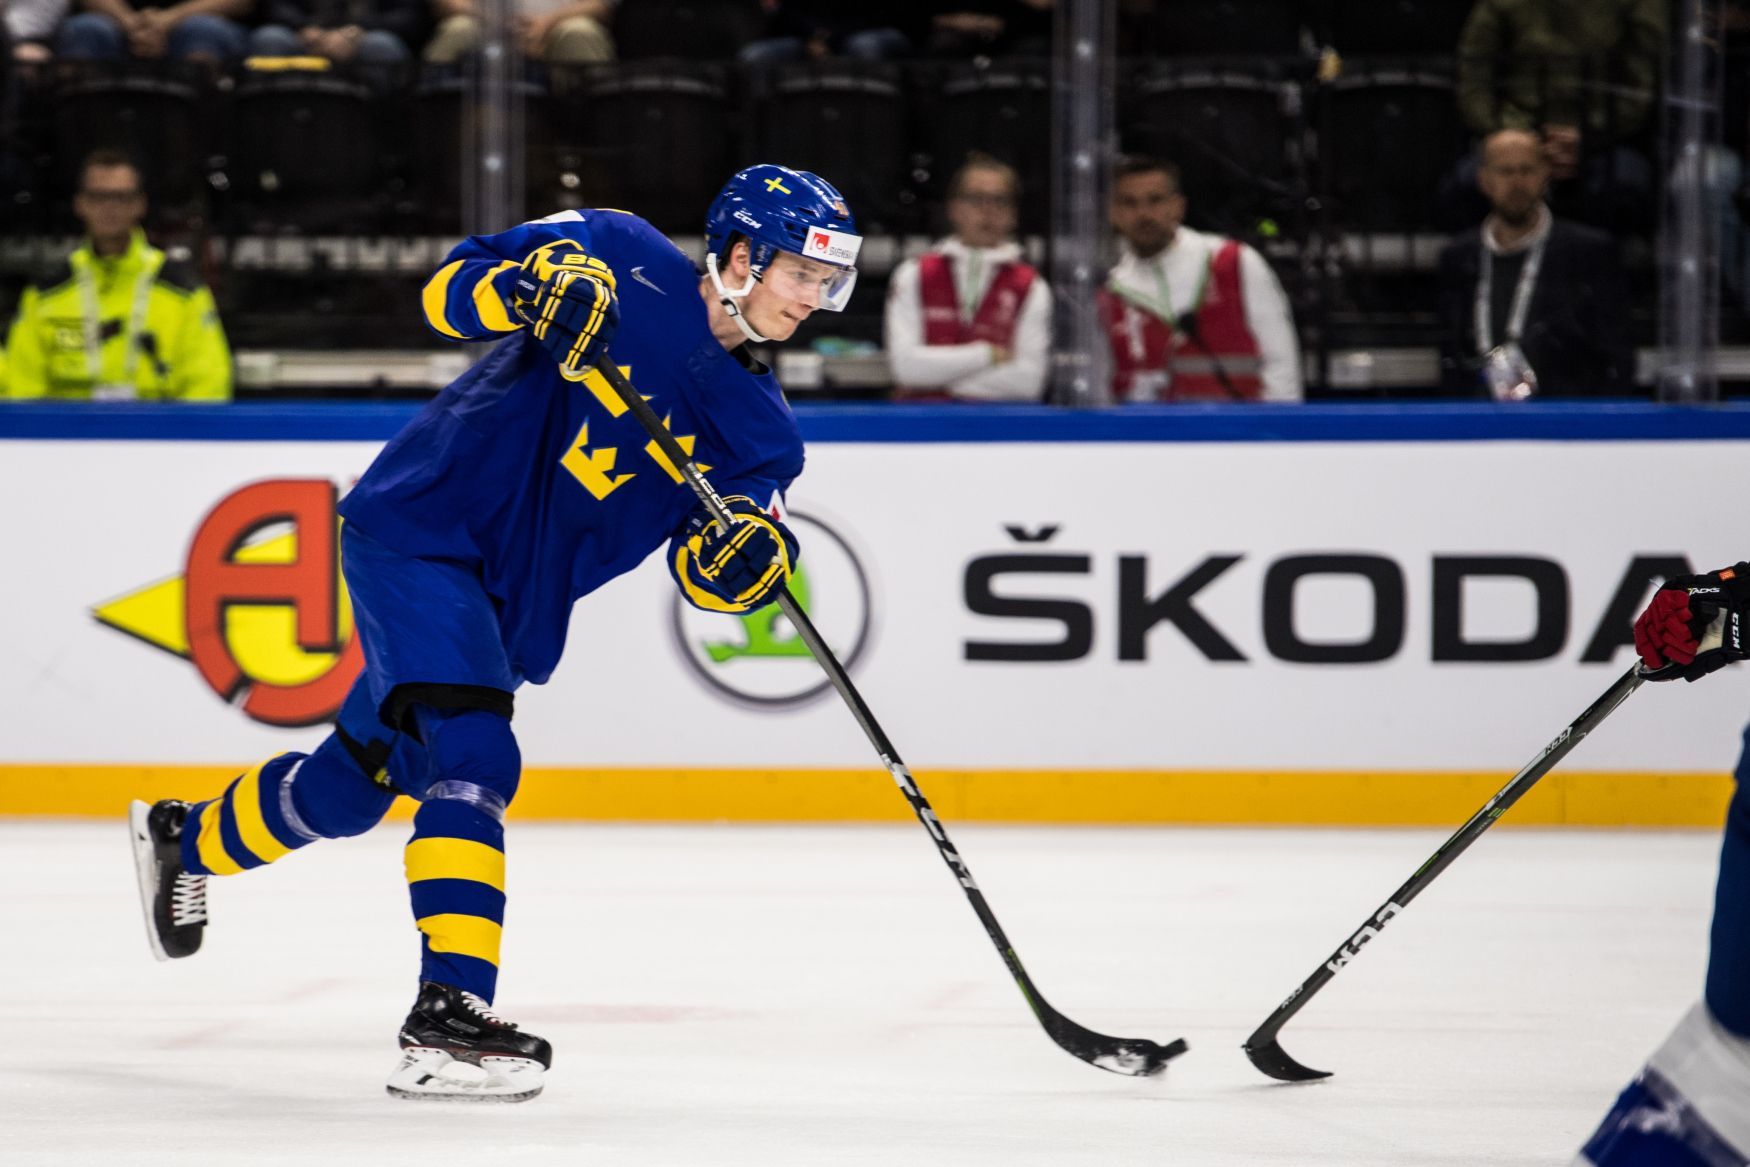 MS v hokeji 2018: Švédský útočník Elias Pettersson